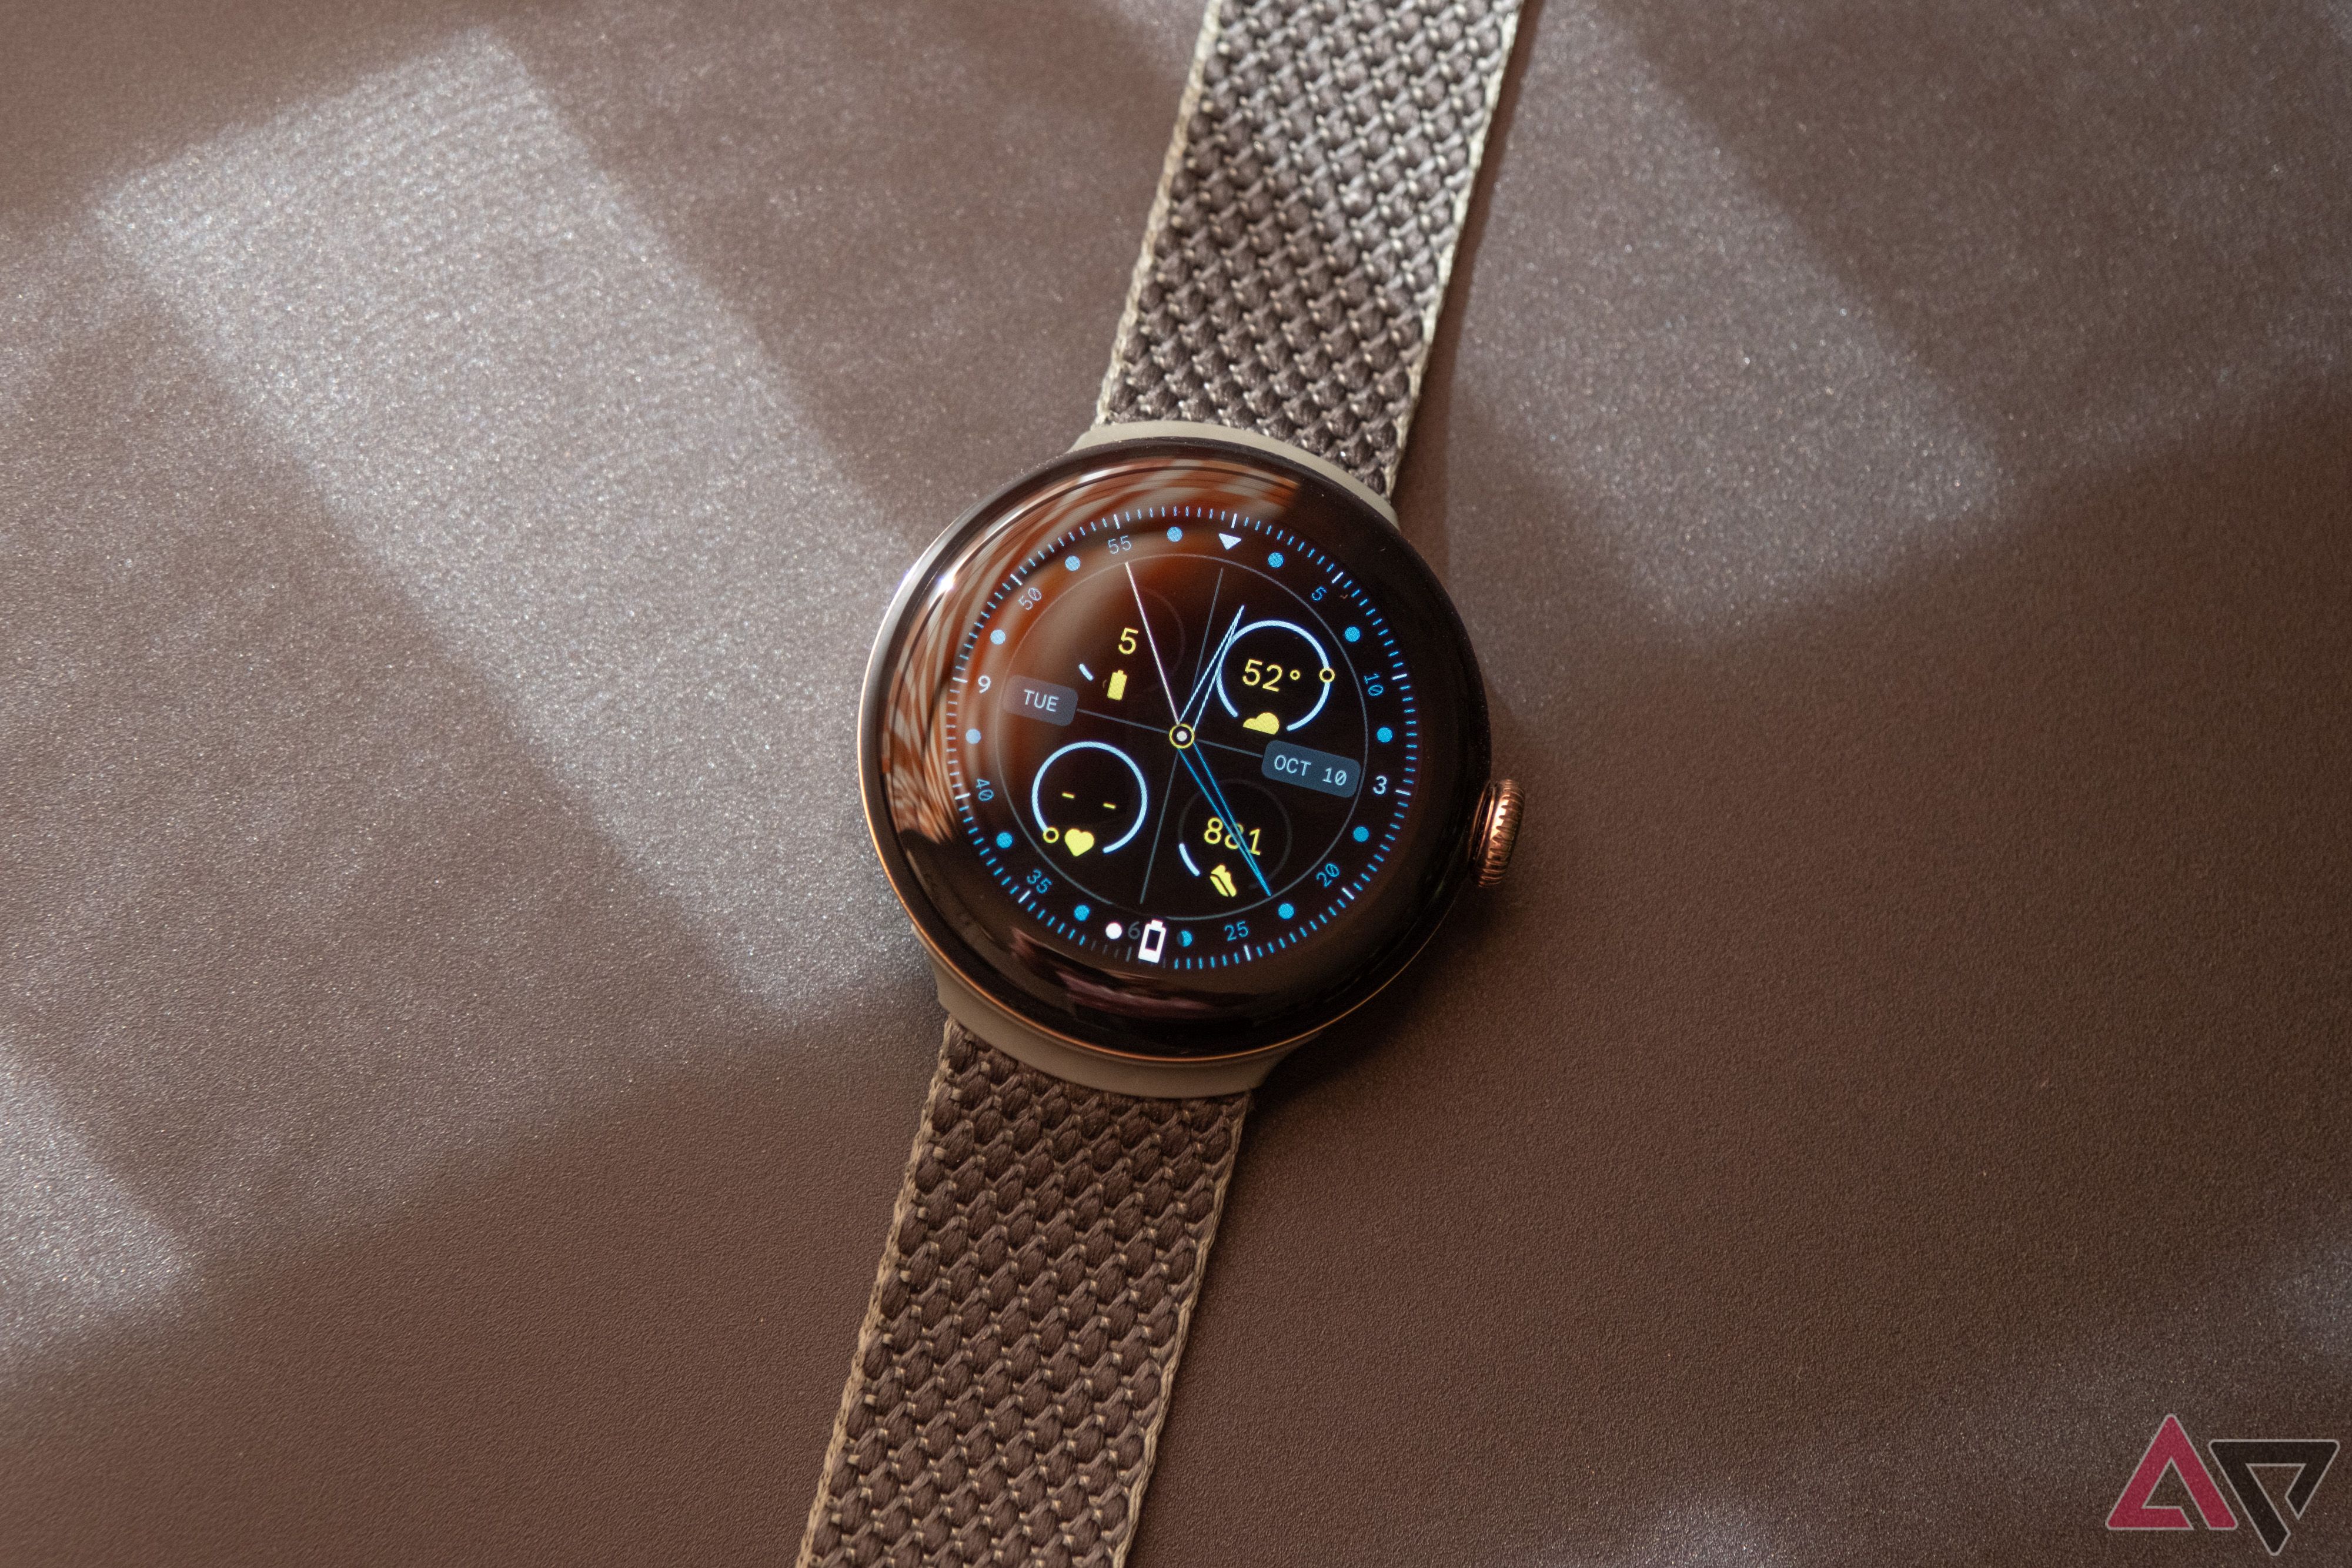 Um Google Pixel Watch repousa sobre uma superfície com textura marrom